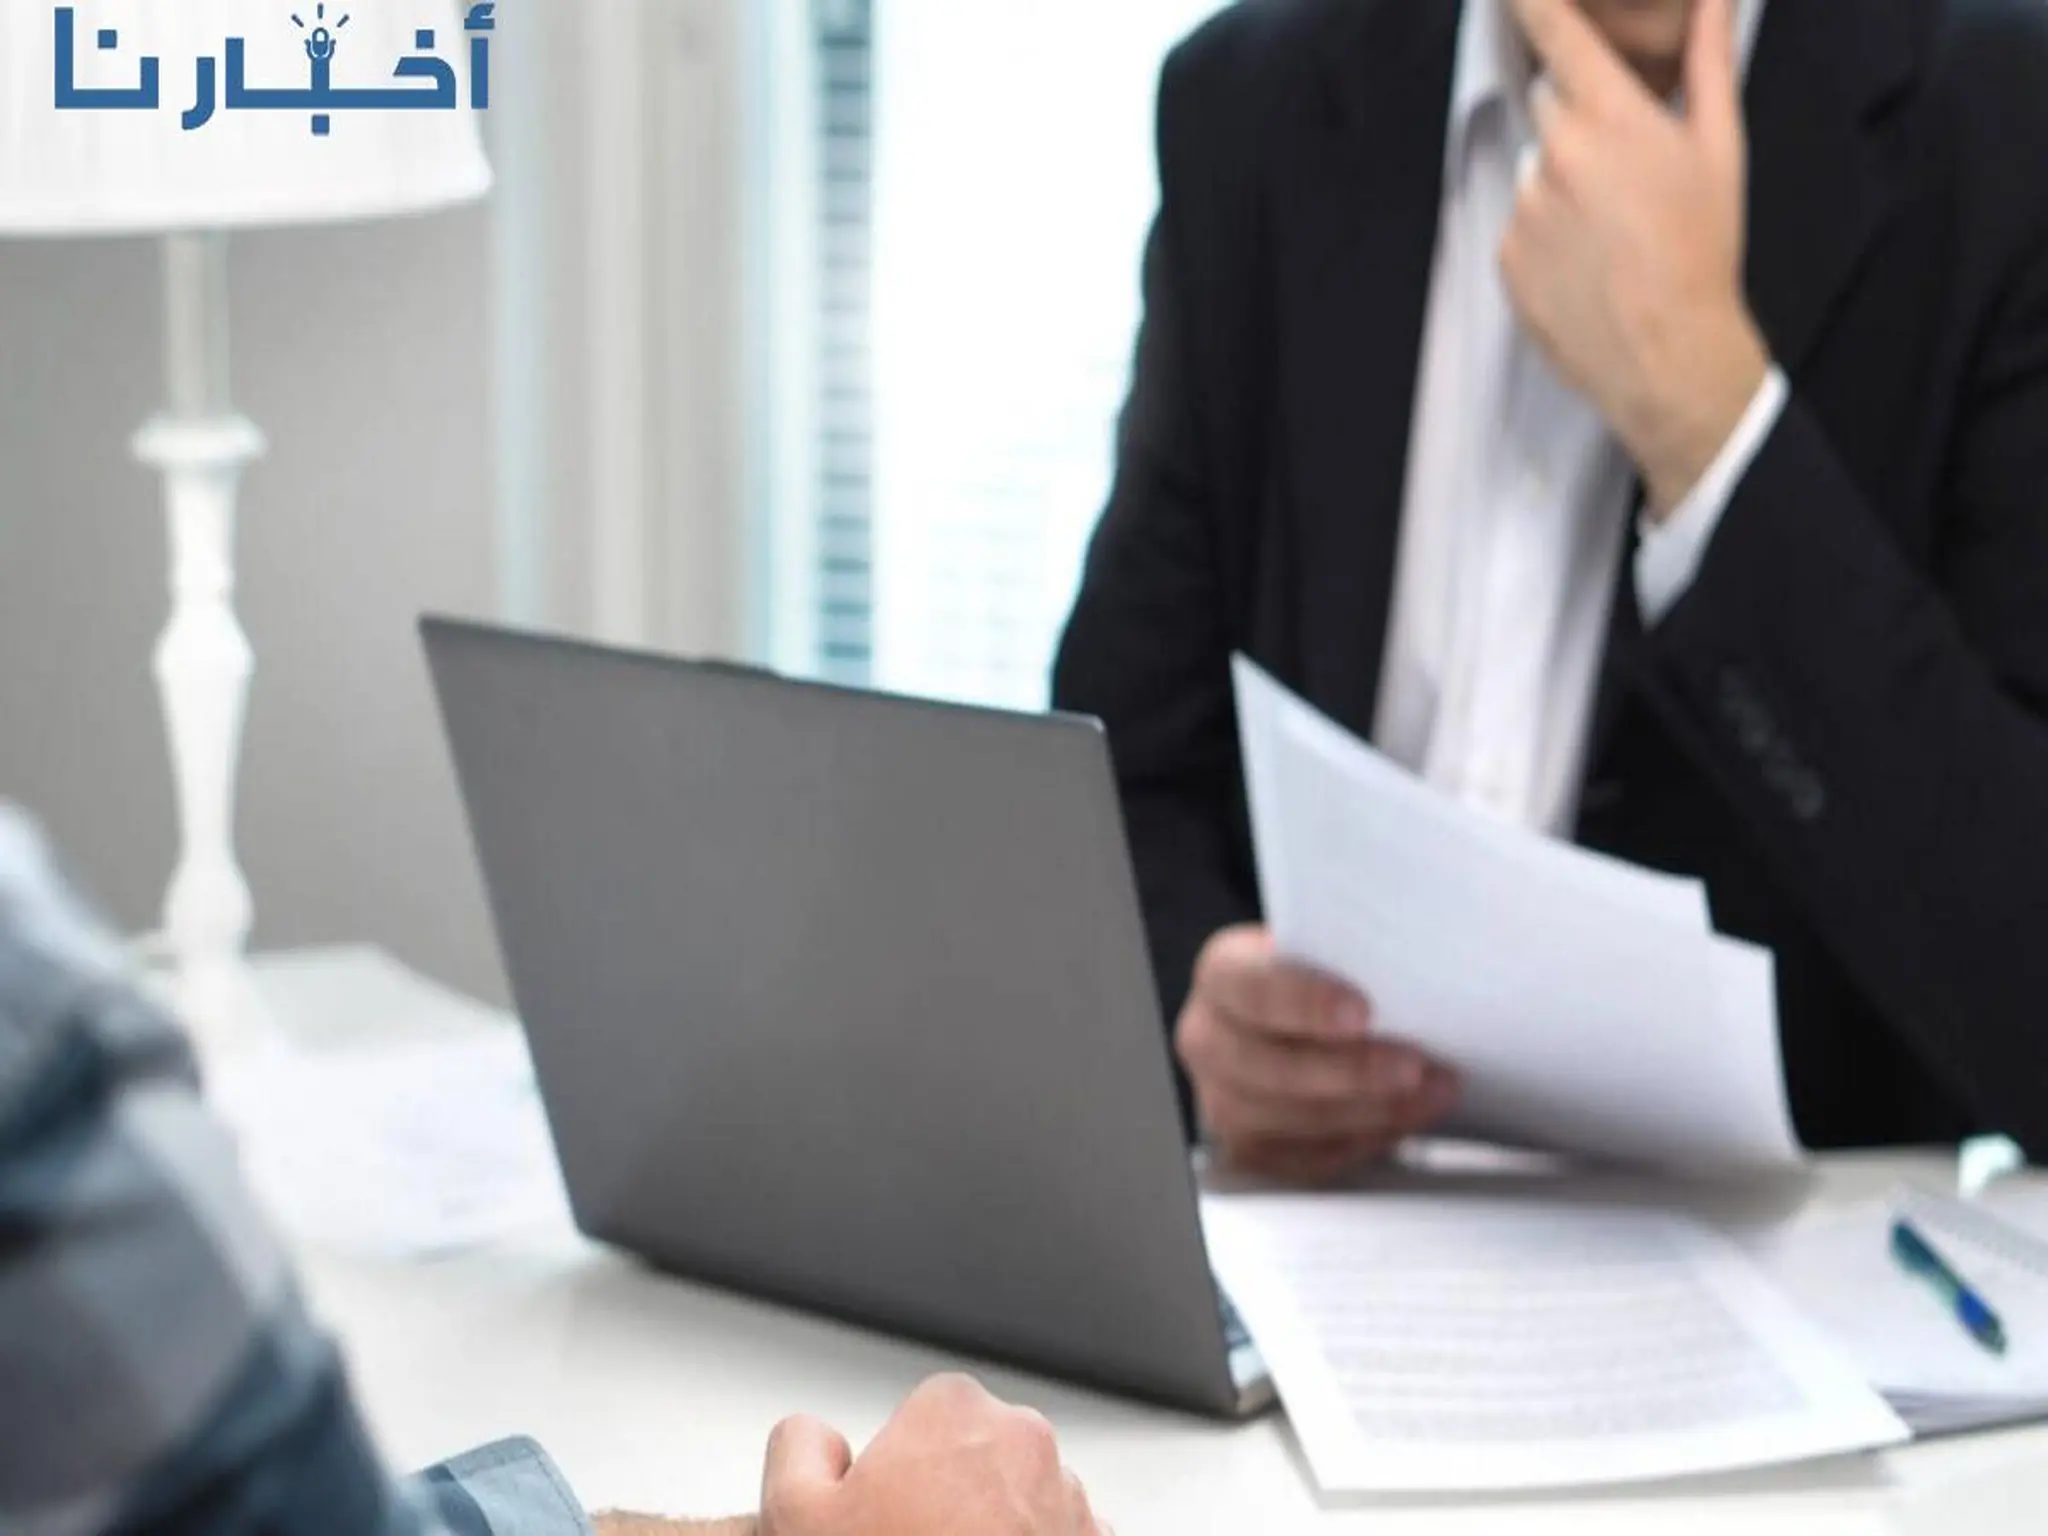 الإمارات: منصة "كوادر" بعجمان توفر فرص عمل في الجهات الحكومية